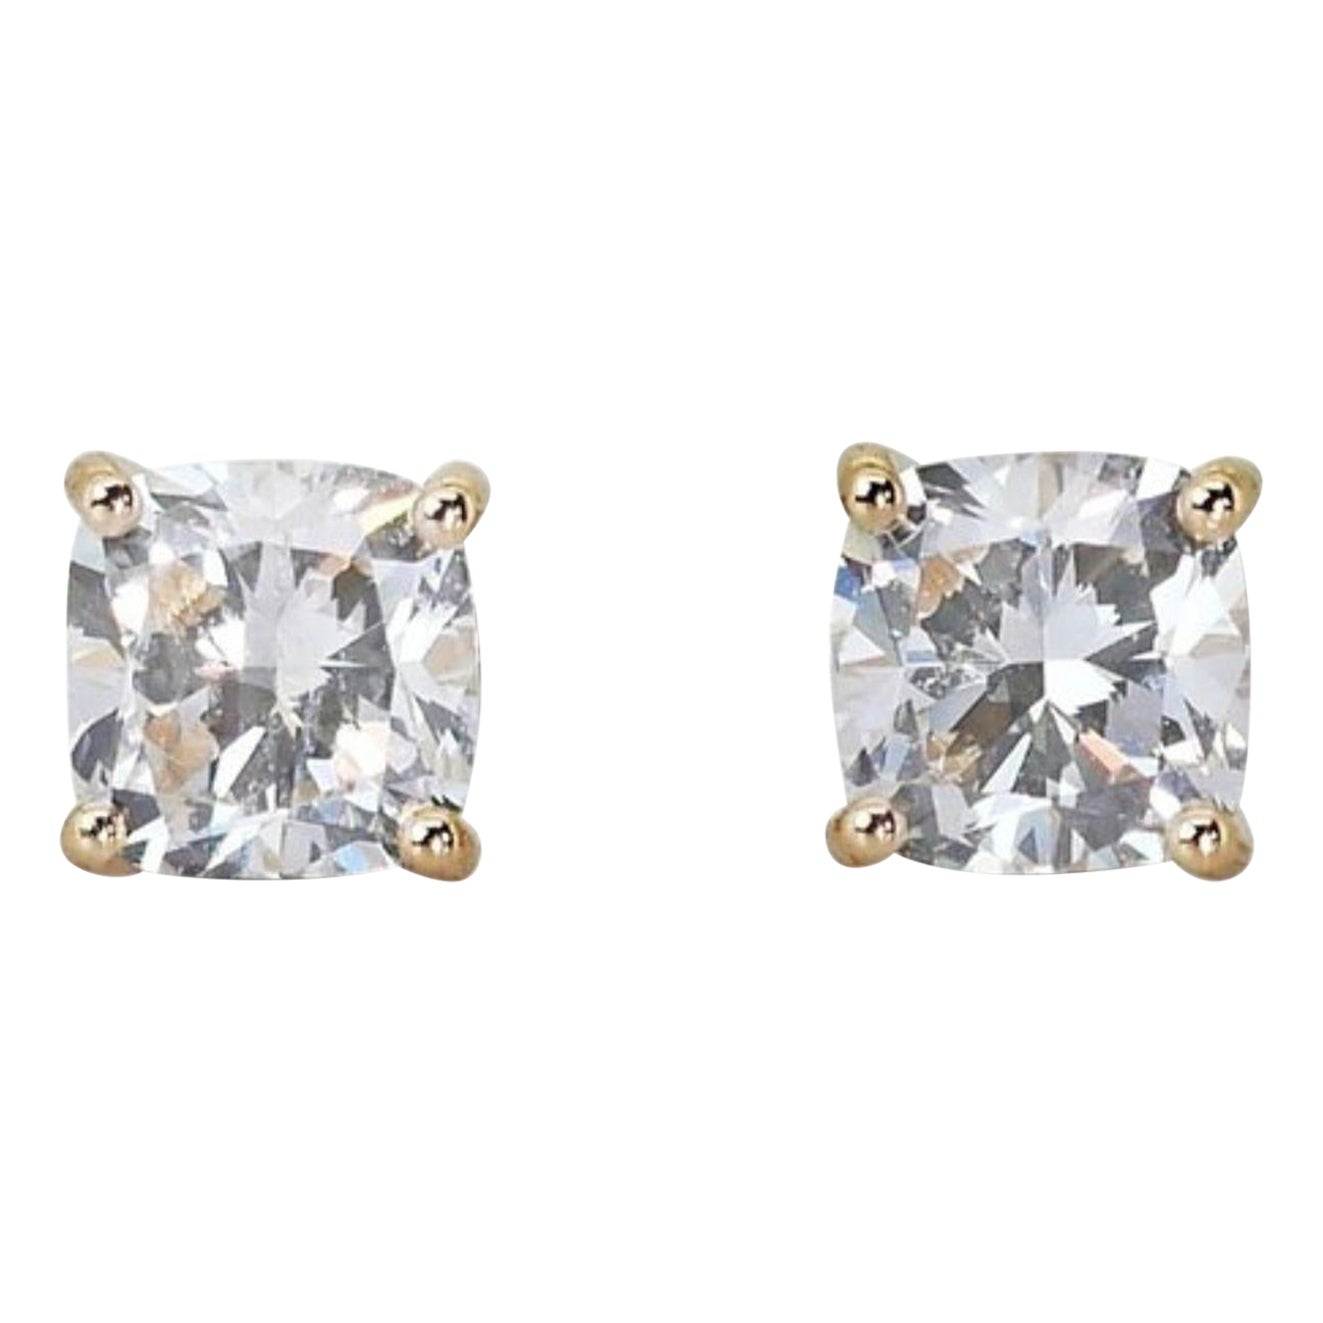 Dazzling 2 carat diamond stud earrings